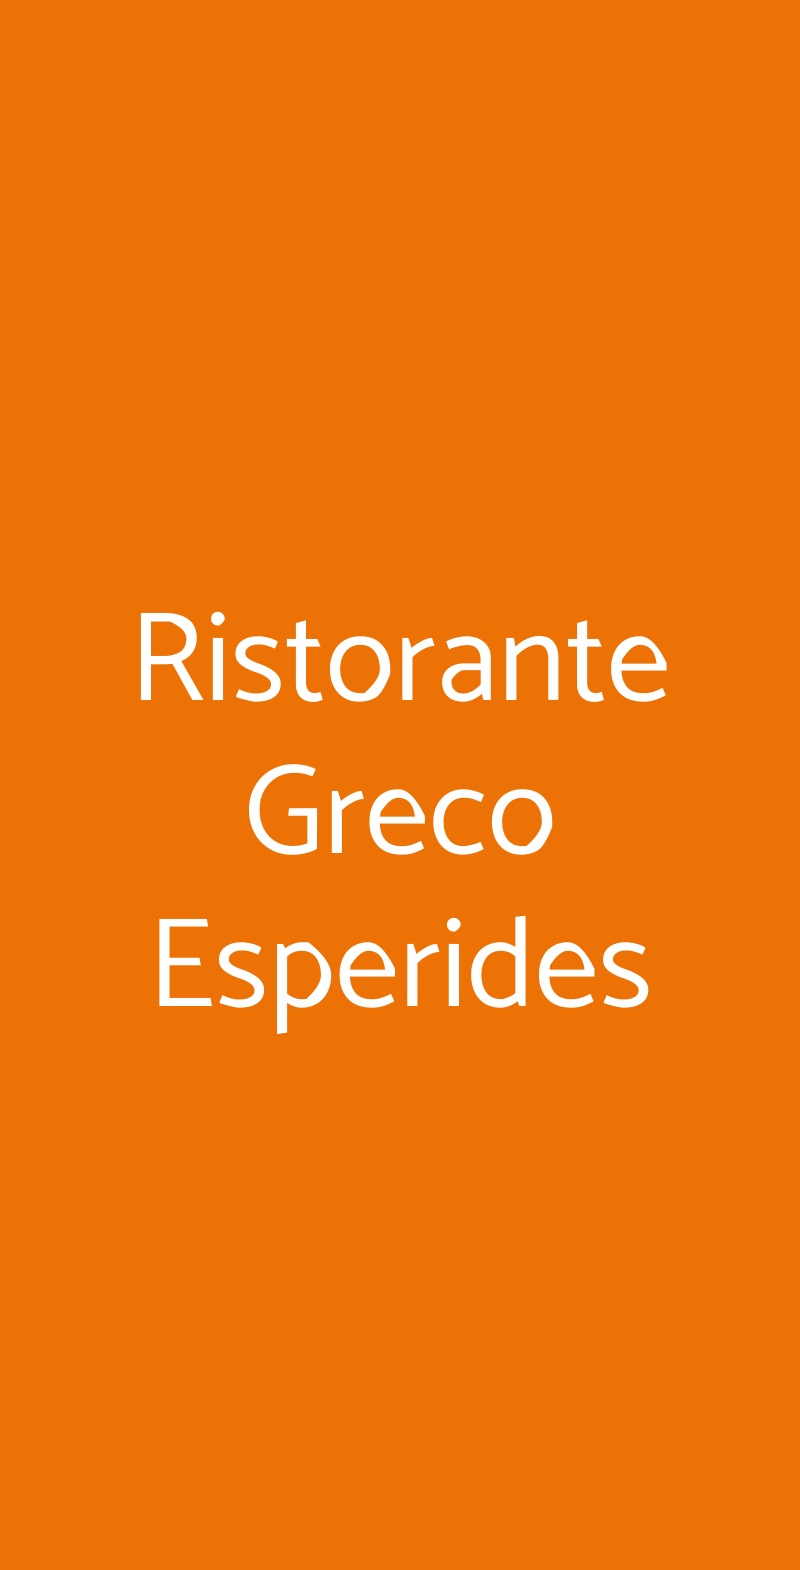 Ristorante Greco Esperides Milano menù 1 pagina